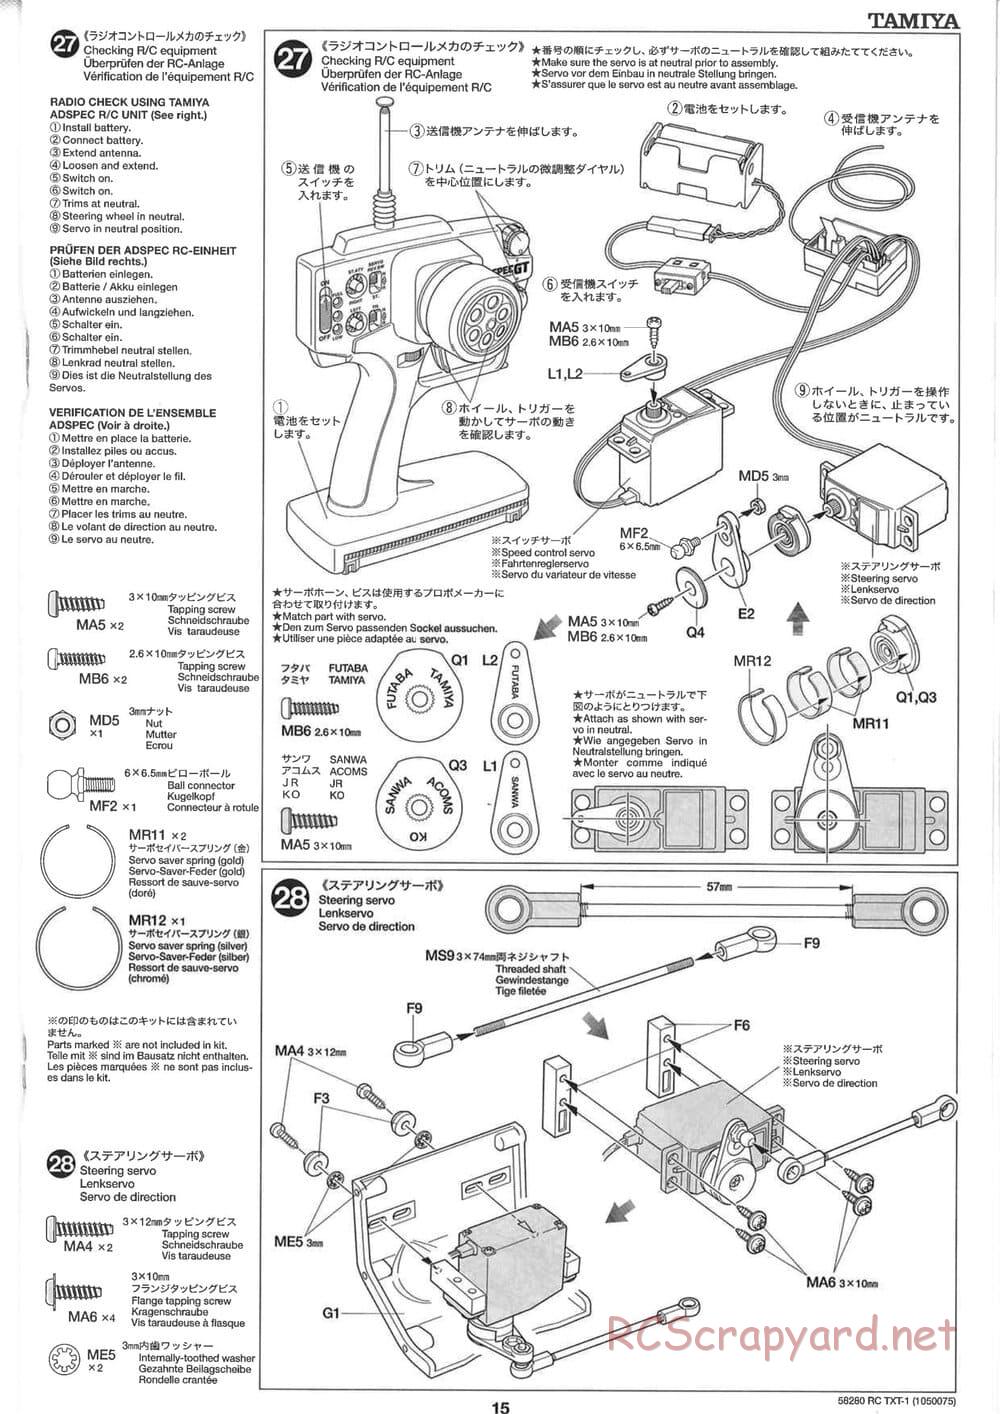 Tamiya - TXT-1 (Tamiya Xtreme Truck) Chassis - Manual - Page 15